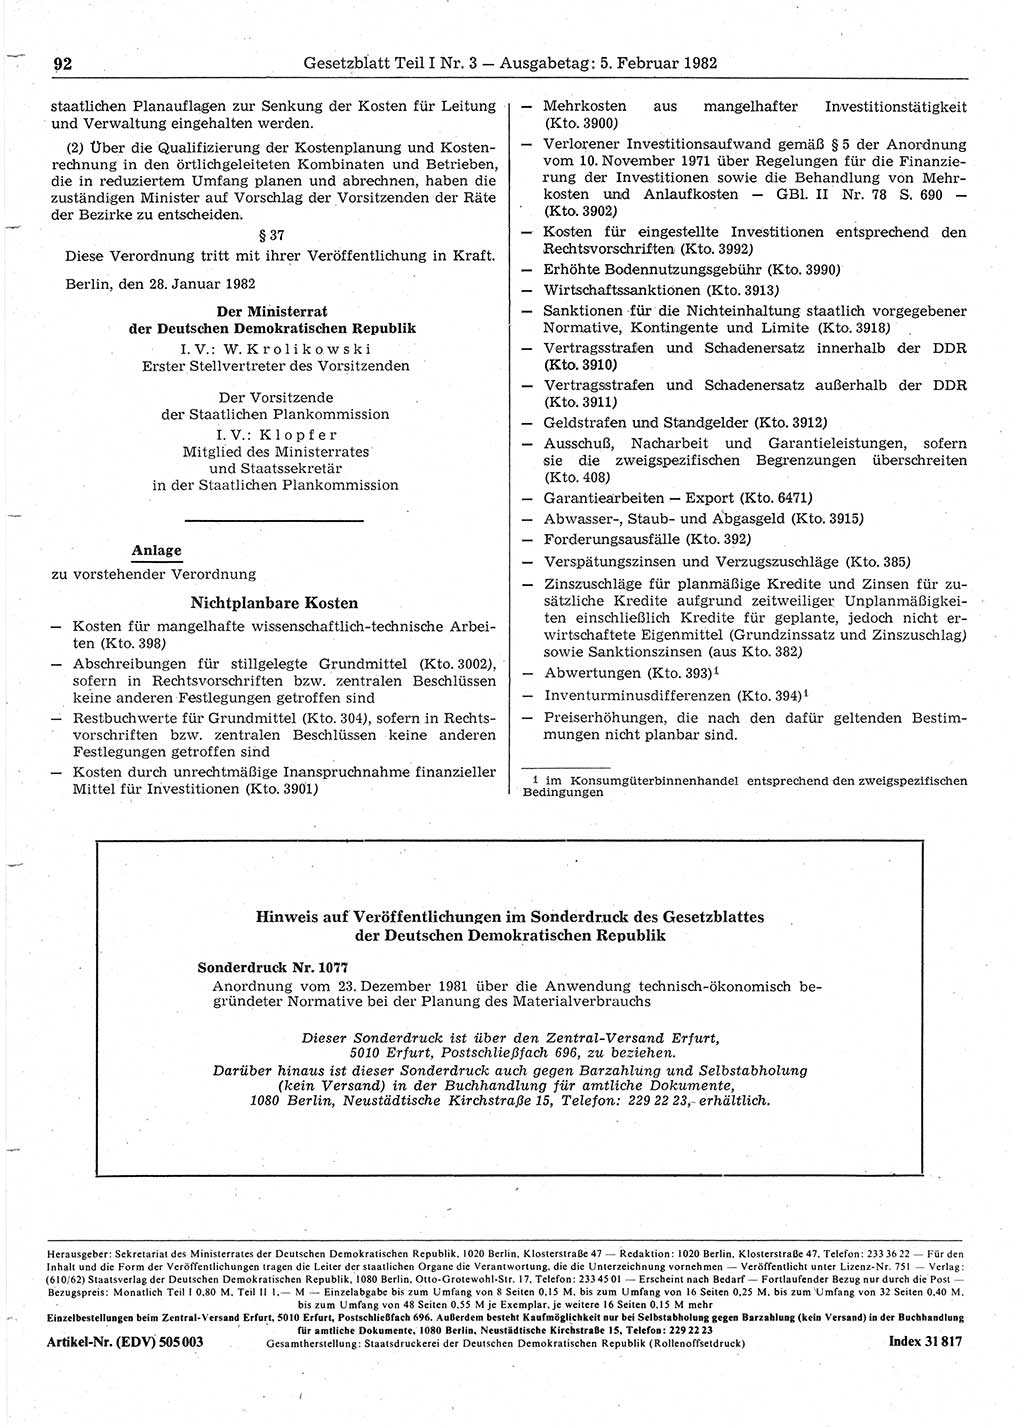 Gesetzblatt (GBl.) der Deutschen Demokratischen Republik (DDR) Teil Ⅰ 1982, Seite 92 (GBl. DDR Ⅰ 1982, S. 92)